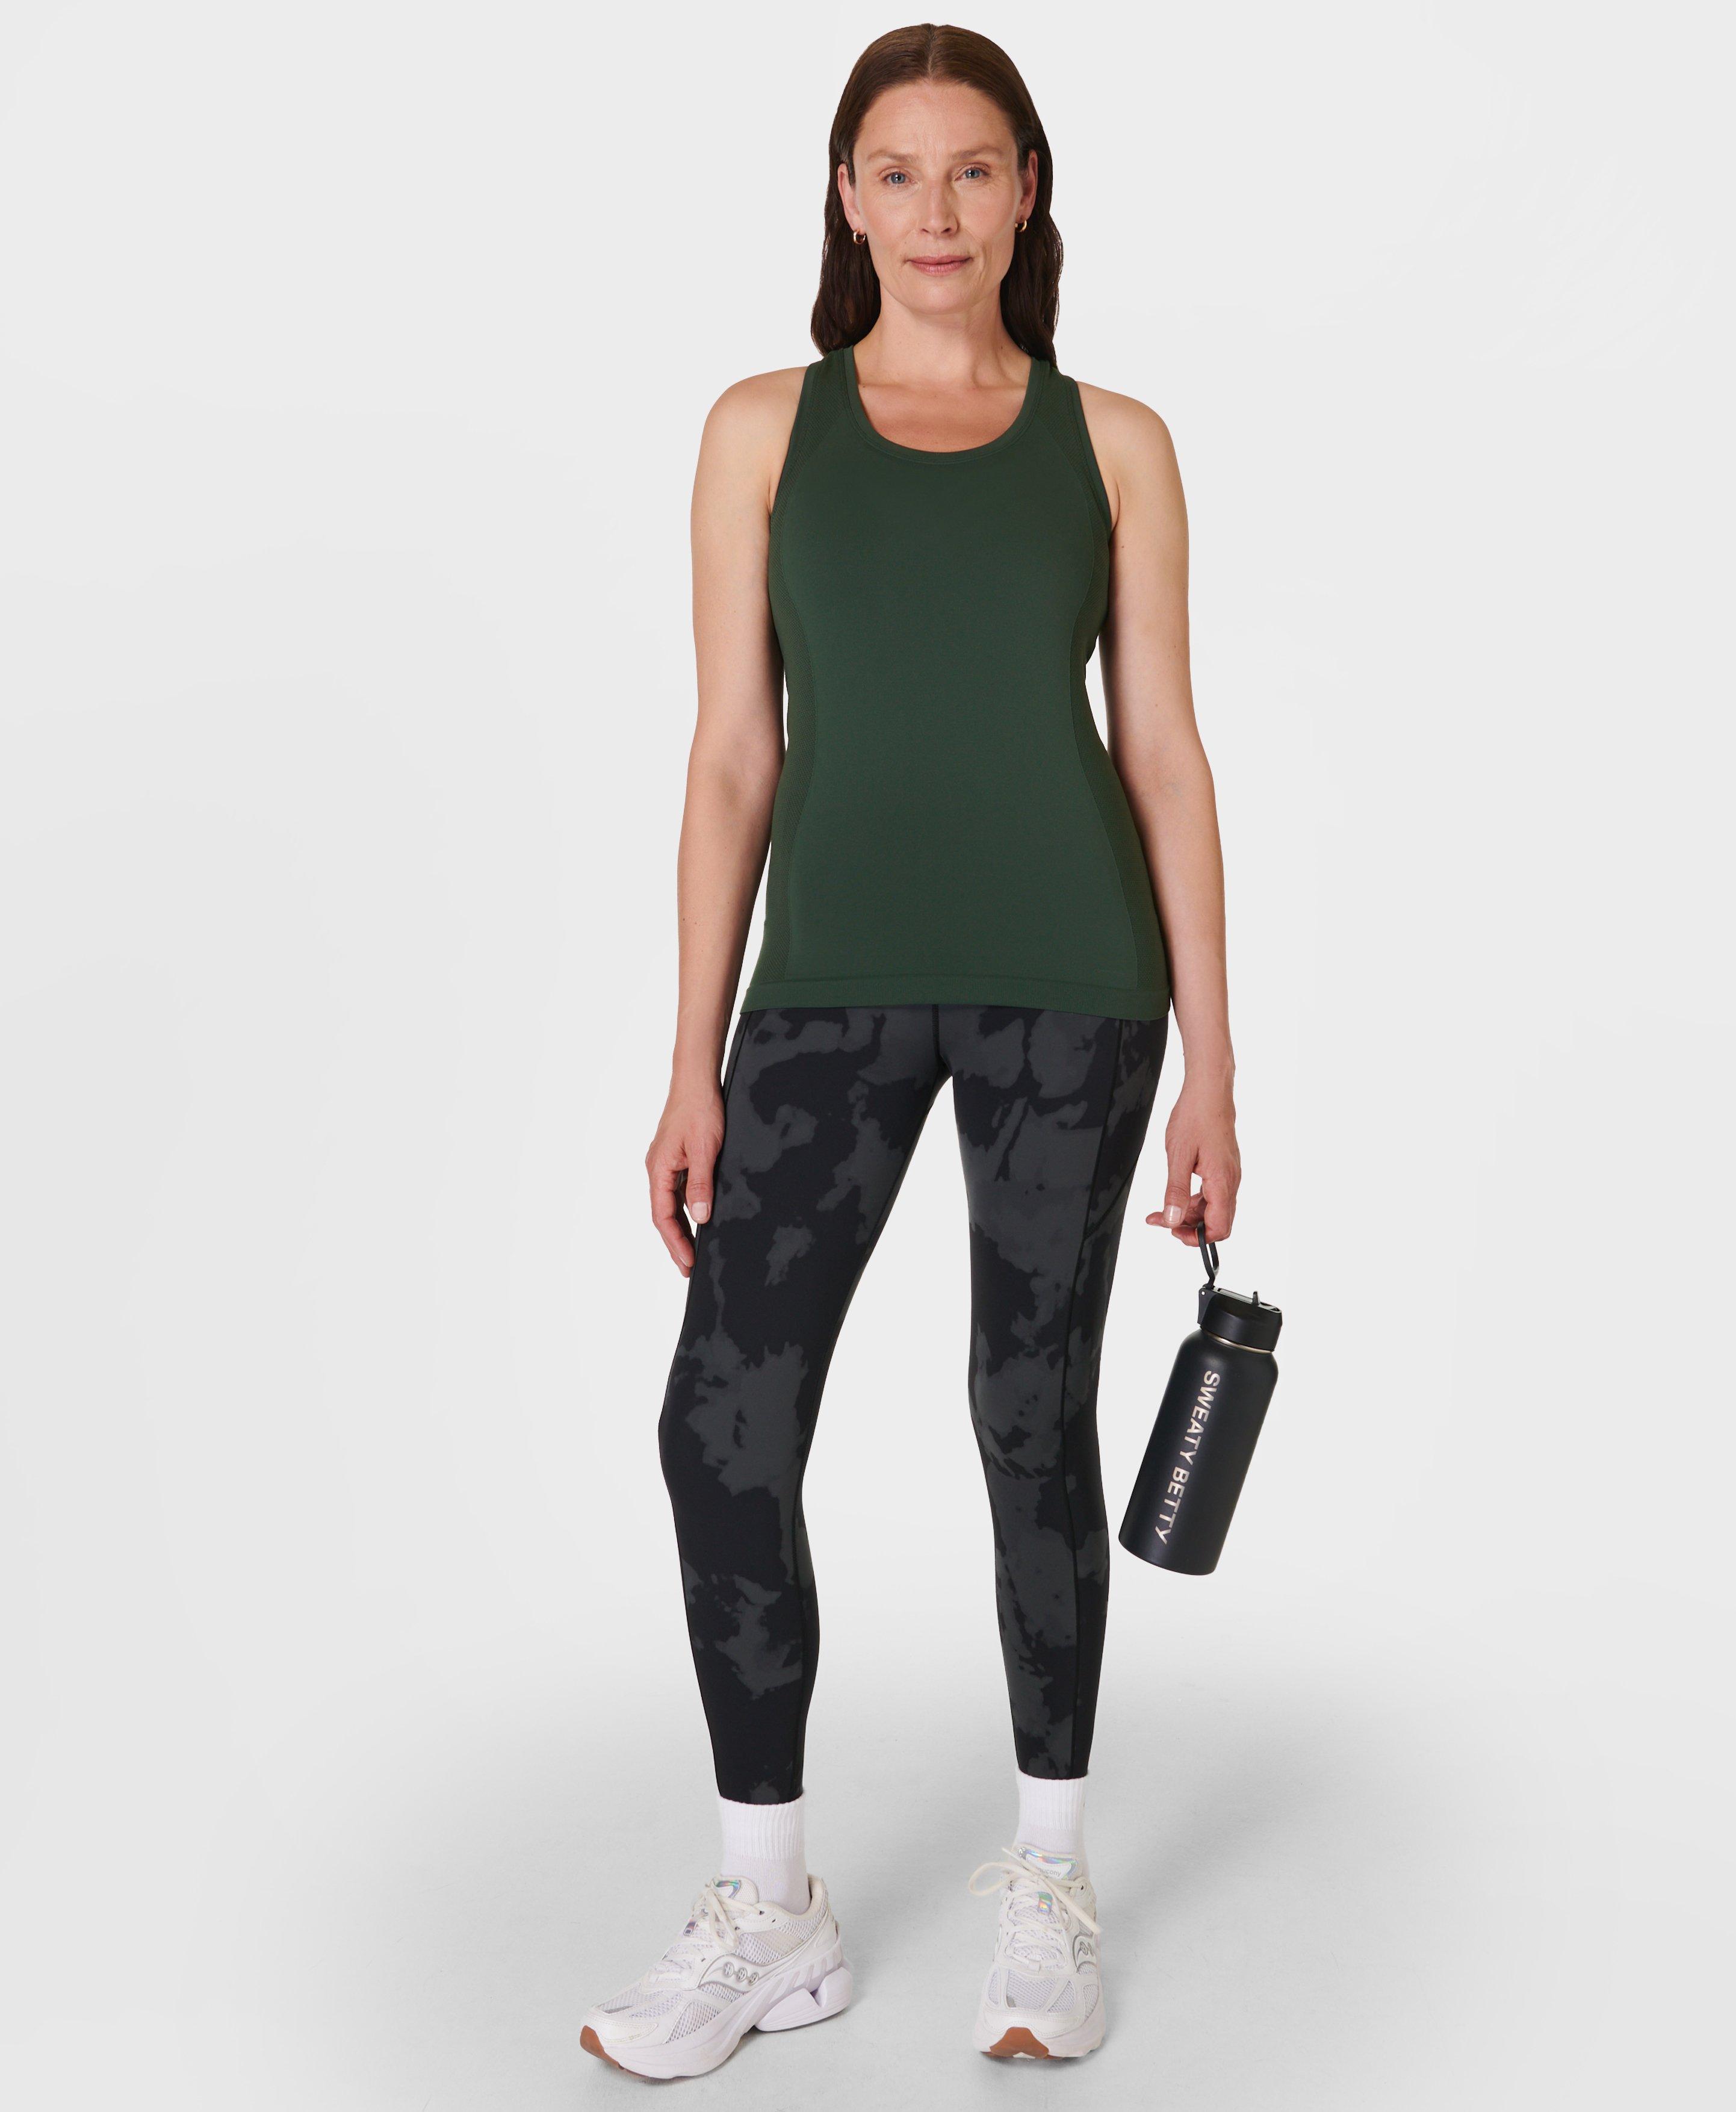 Sweaty Betty Army Green Sports Yoga Gym Fitness Crop Top Bra Size XS 6 8 UK